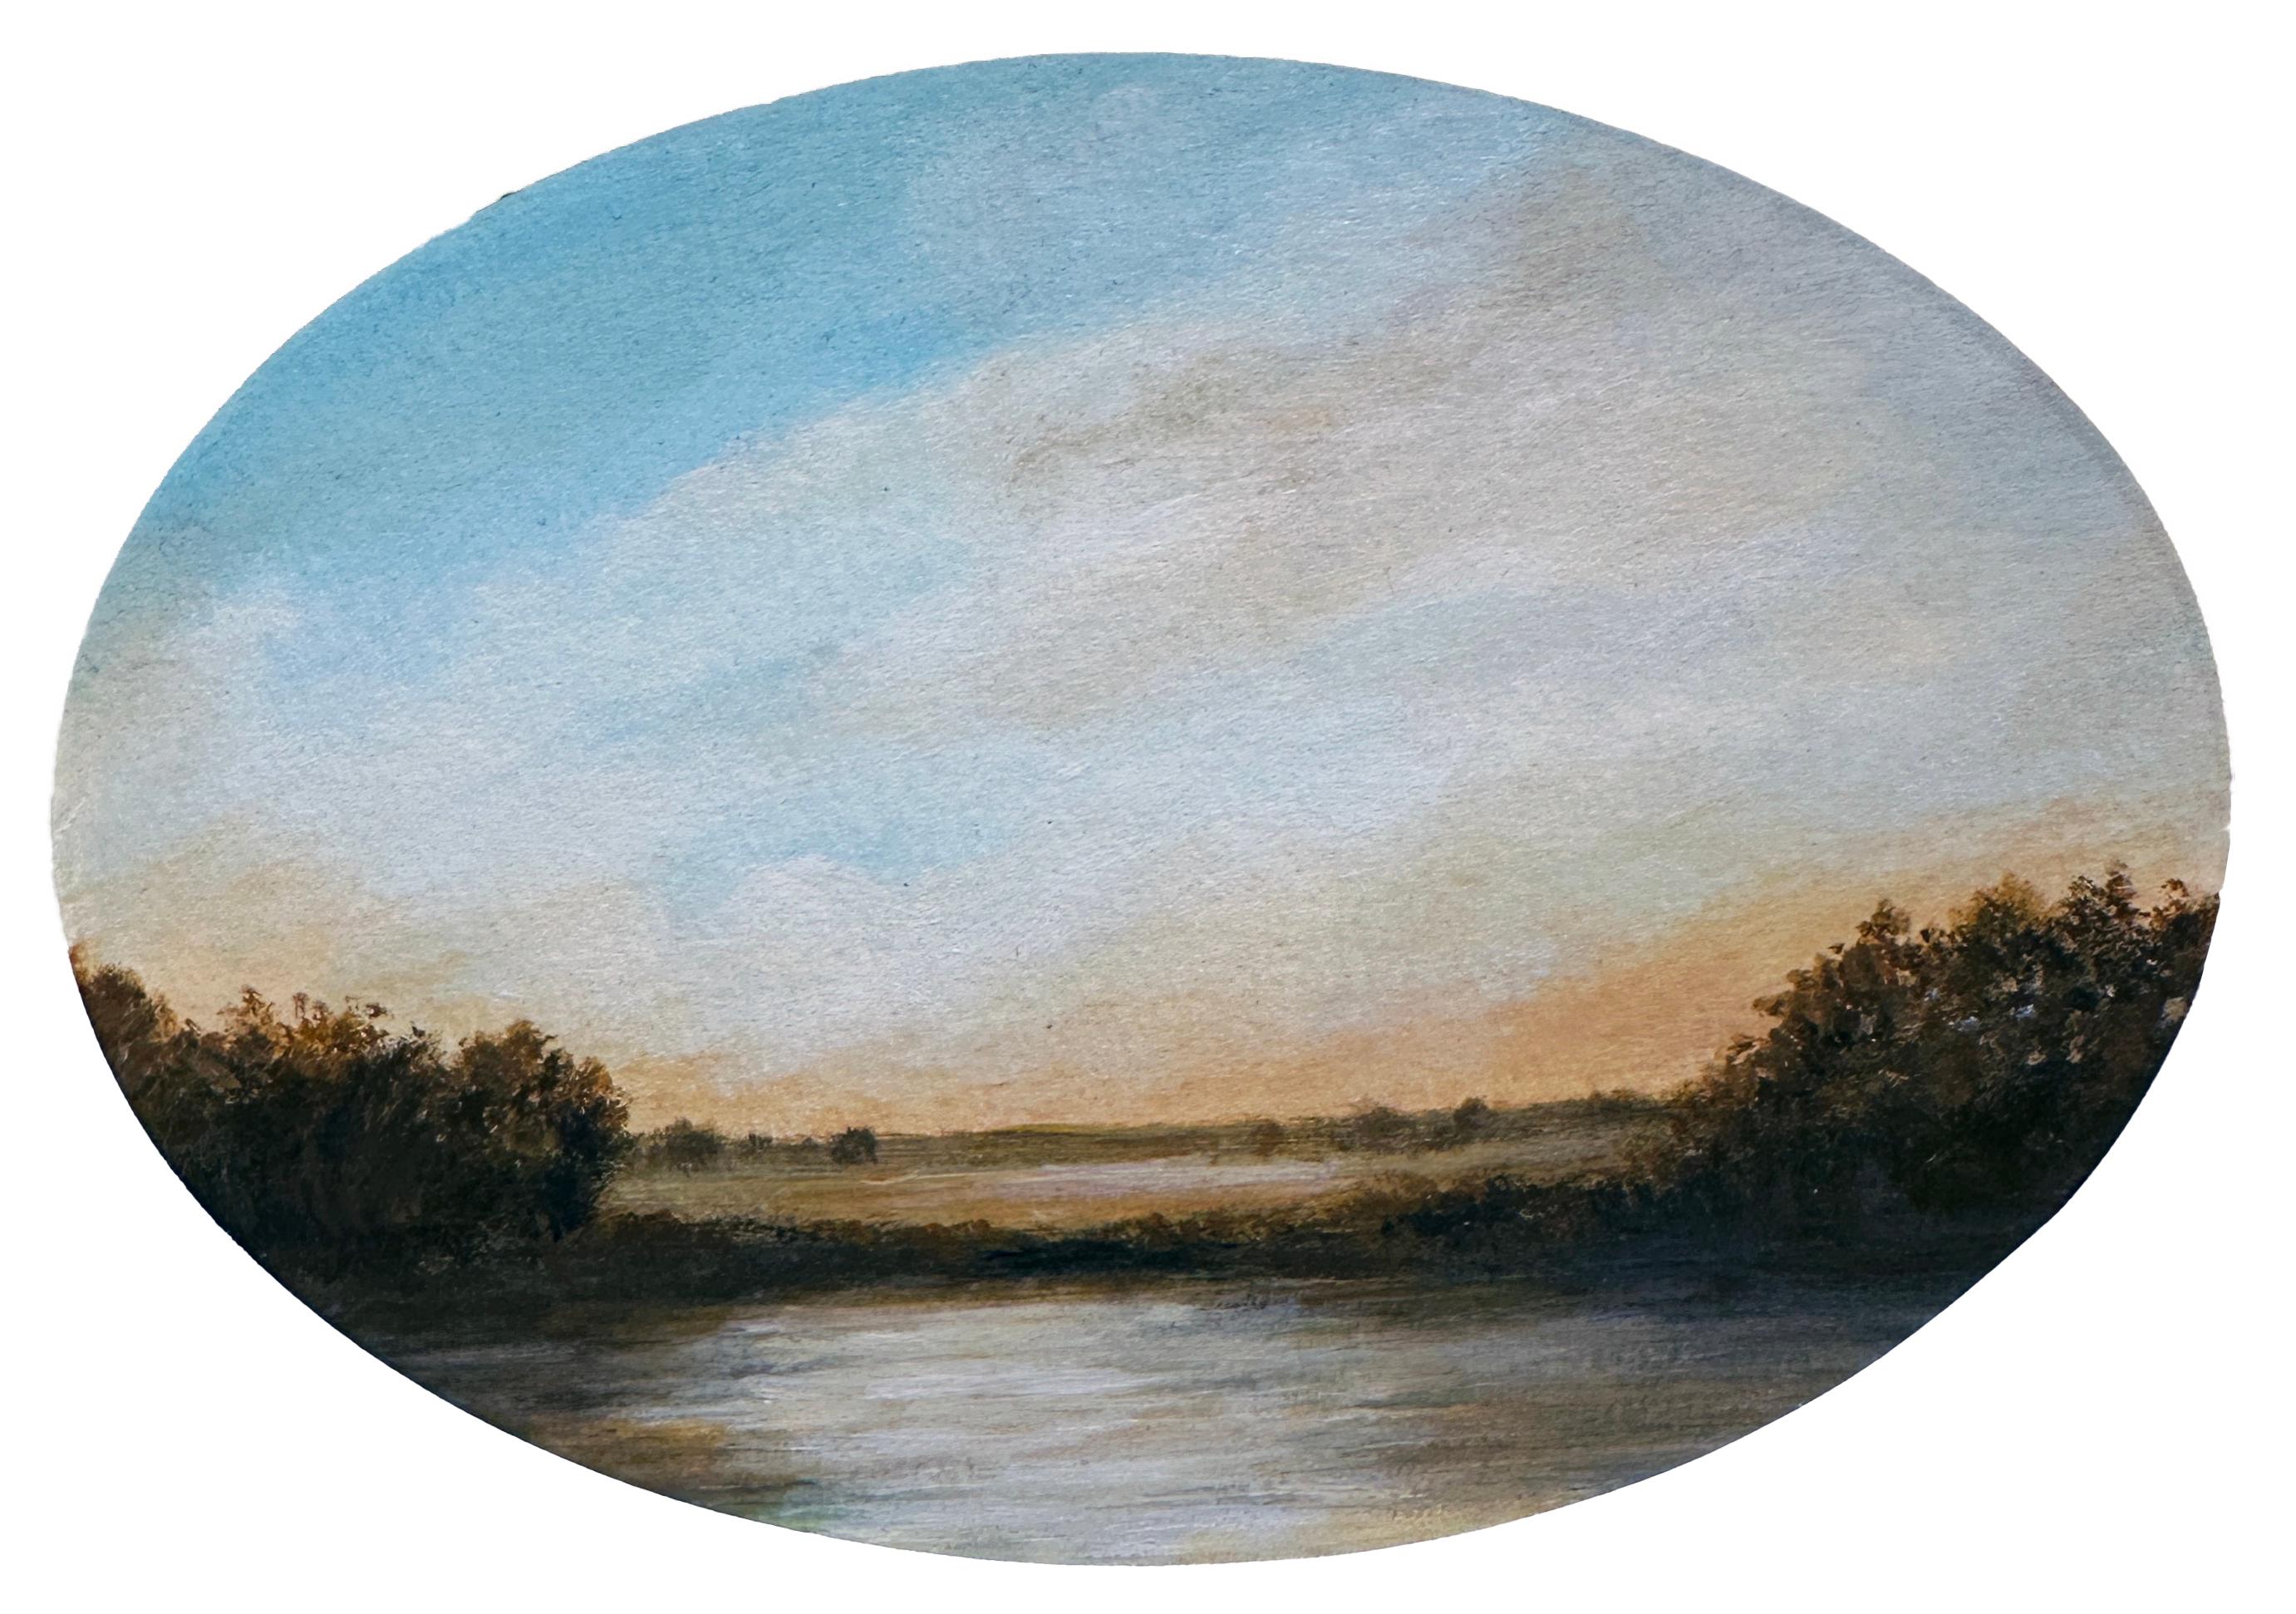 Teich – ruhige Landschaft, Sonne nur am Horizont, wolkengefüllter Himmel